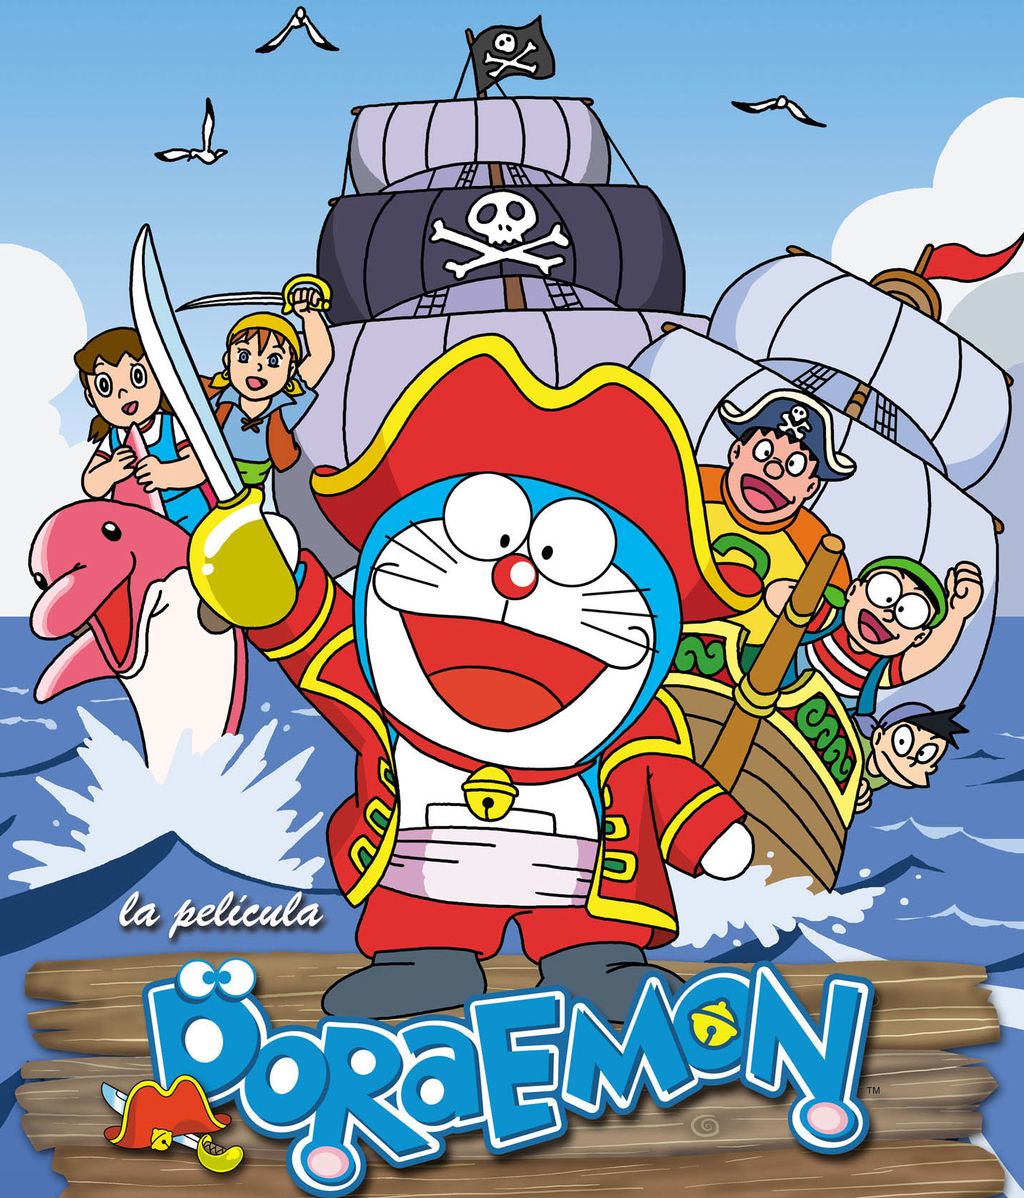  Doraemon  protagonista del nuevo microsite de boing es